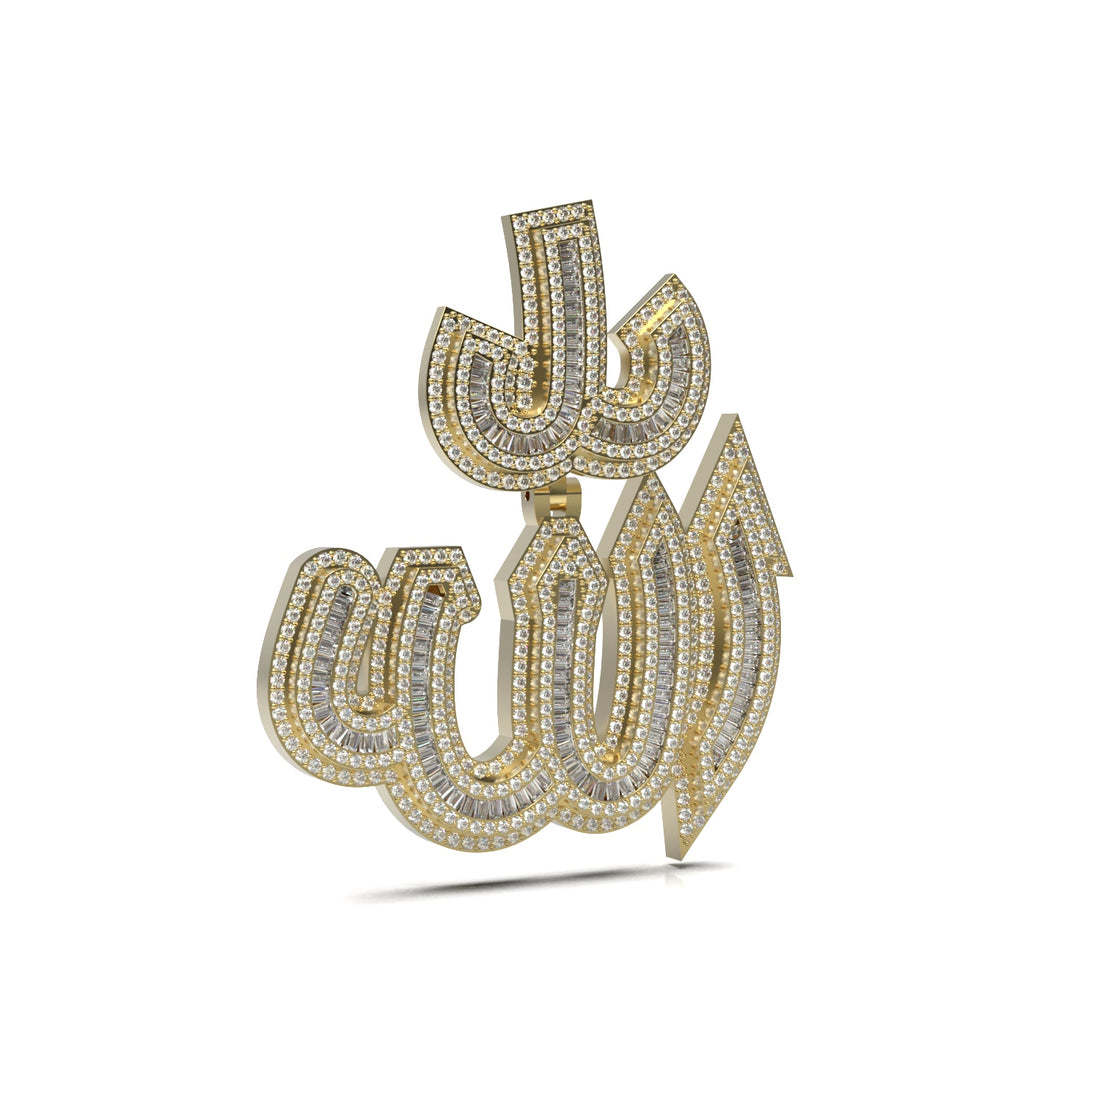 3D Two-Tone Baguette "Allah" Pendant